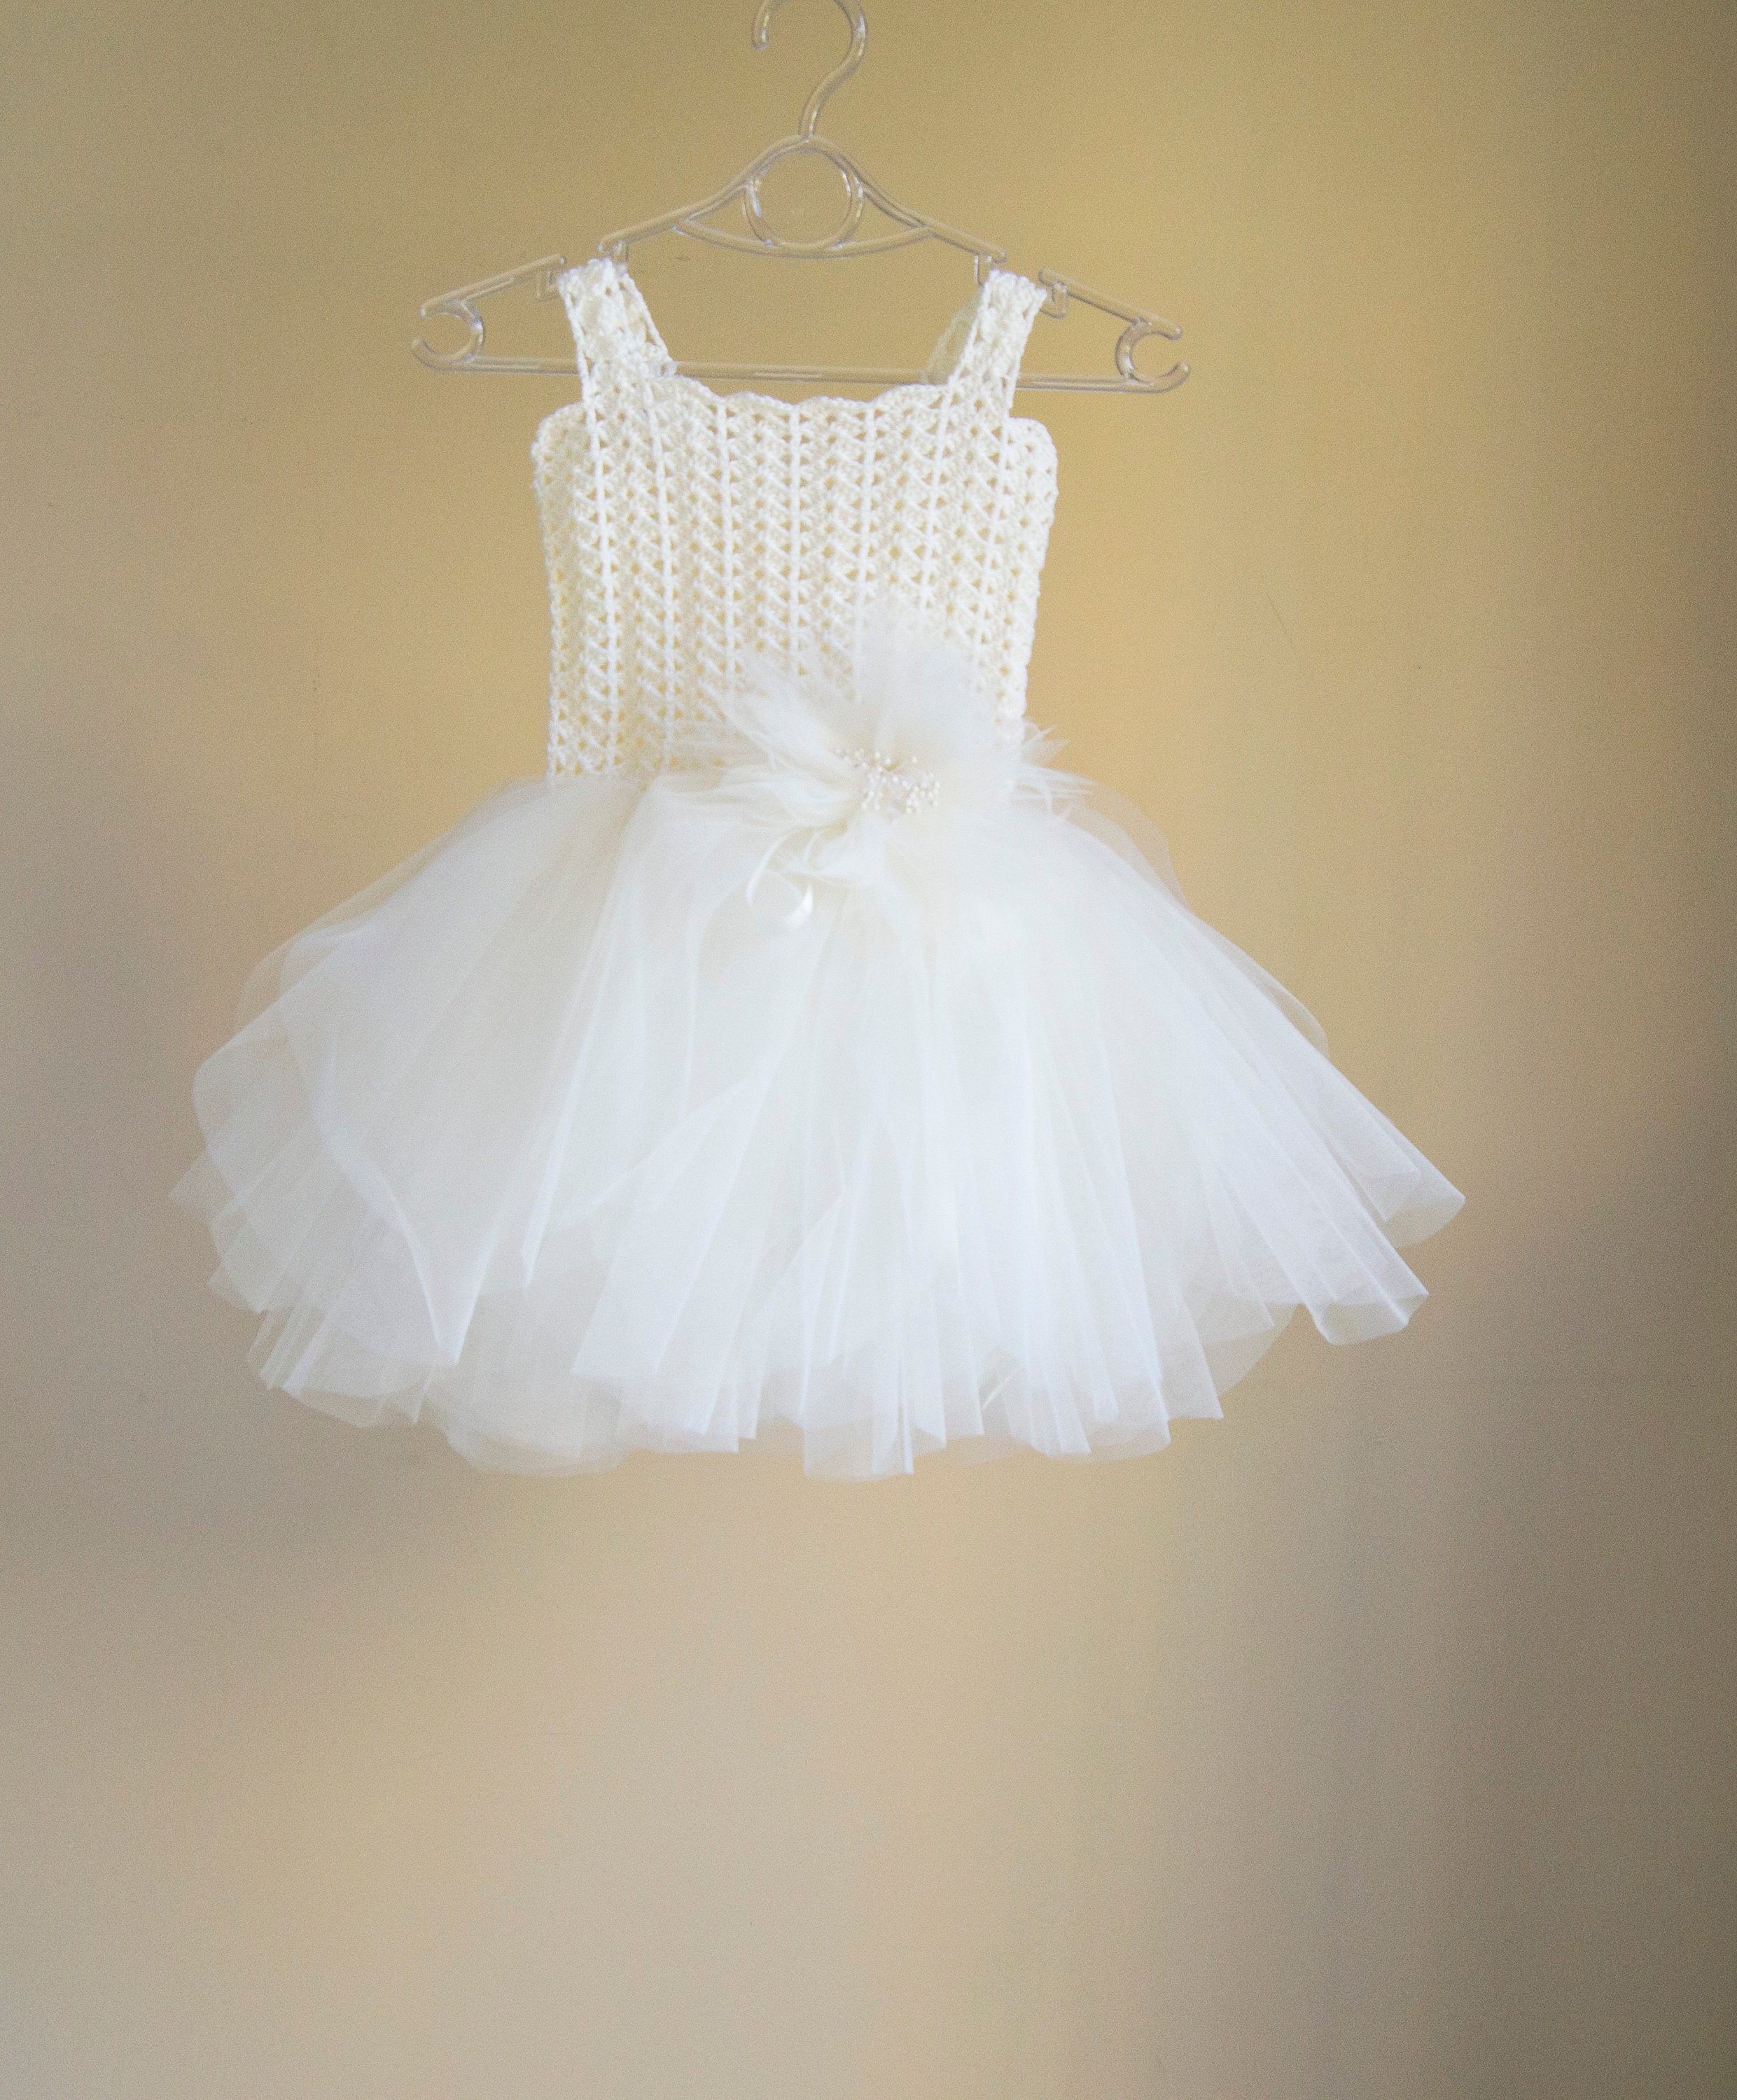 Ivory tutu dress for little ballerina. Flower Girl Tutu Dress. | Etsy